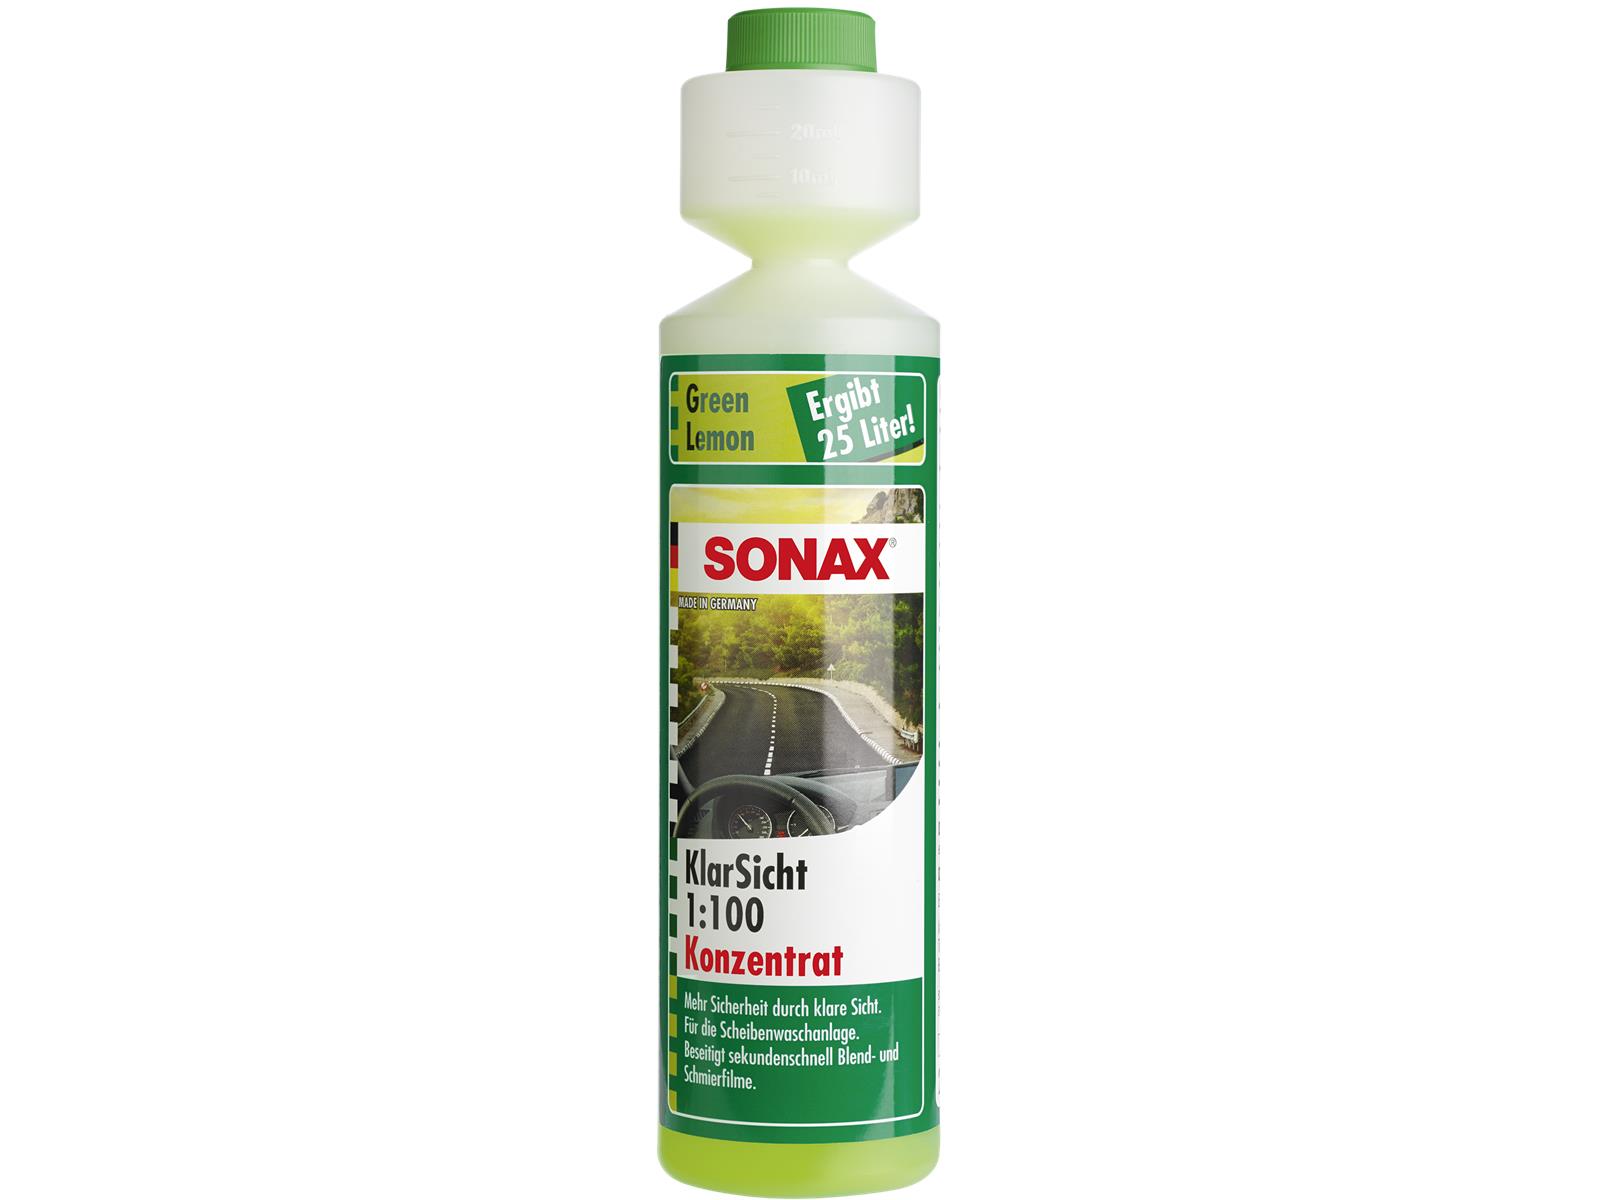 SONAX 03861410 KlarSicht 1:100 Konzentrat Green Lemon 250 ml